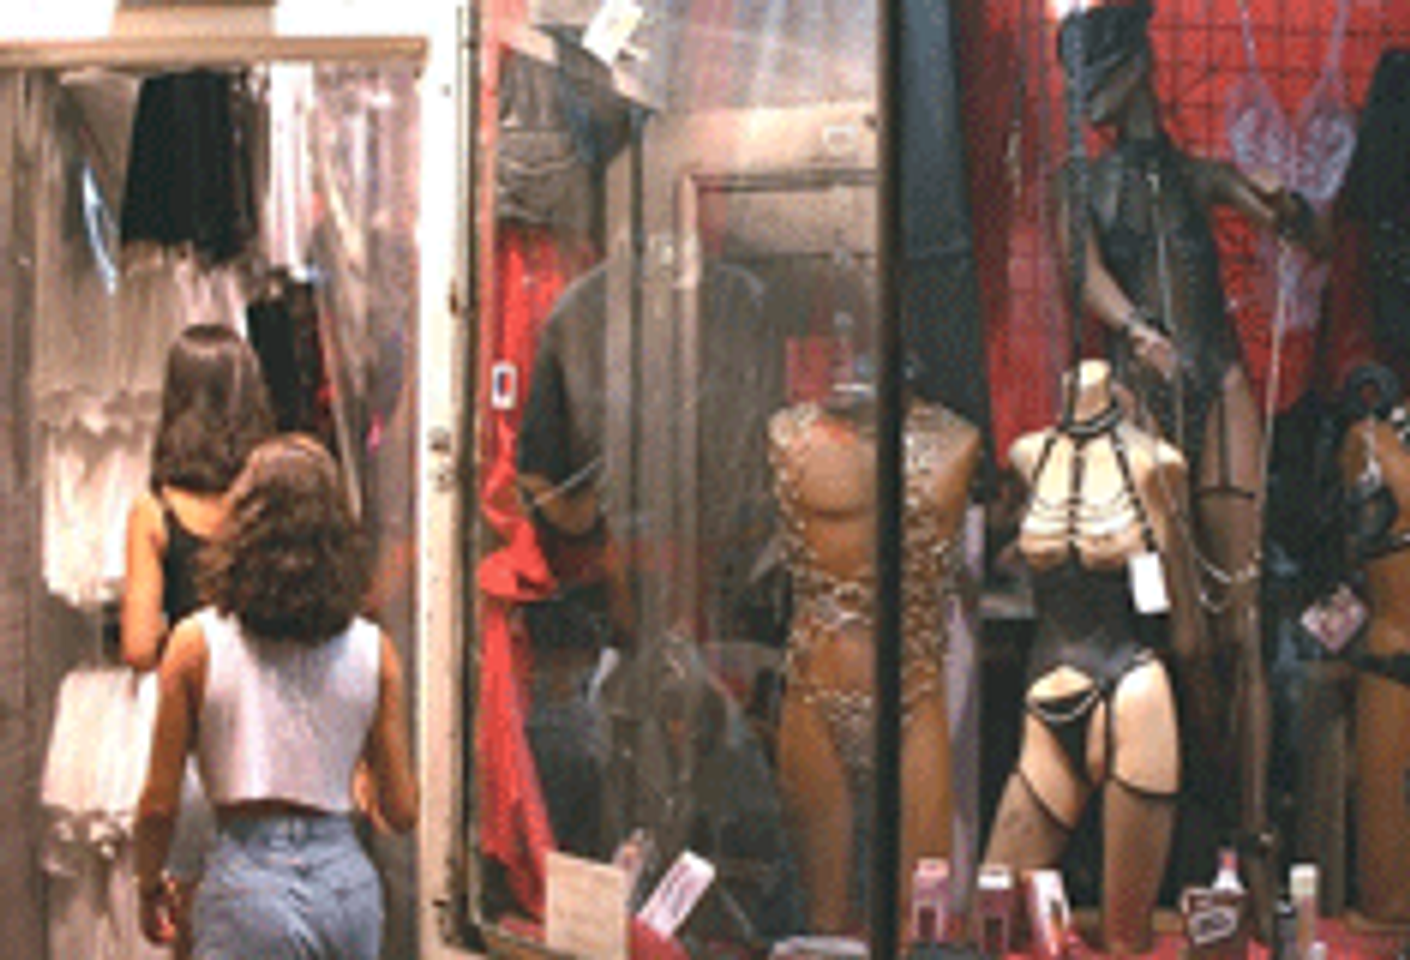 Irish Authorities Raid Sex Shops